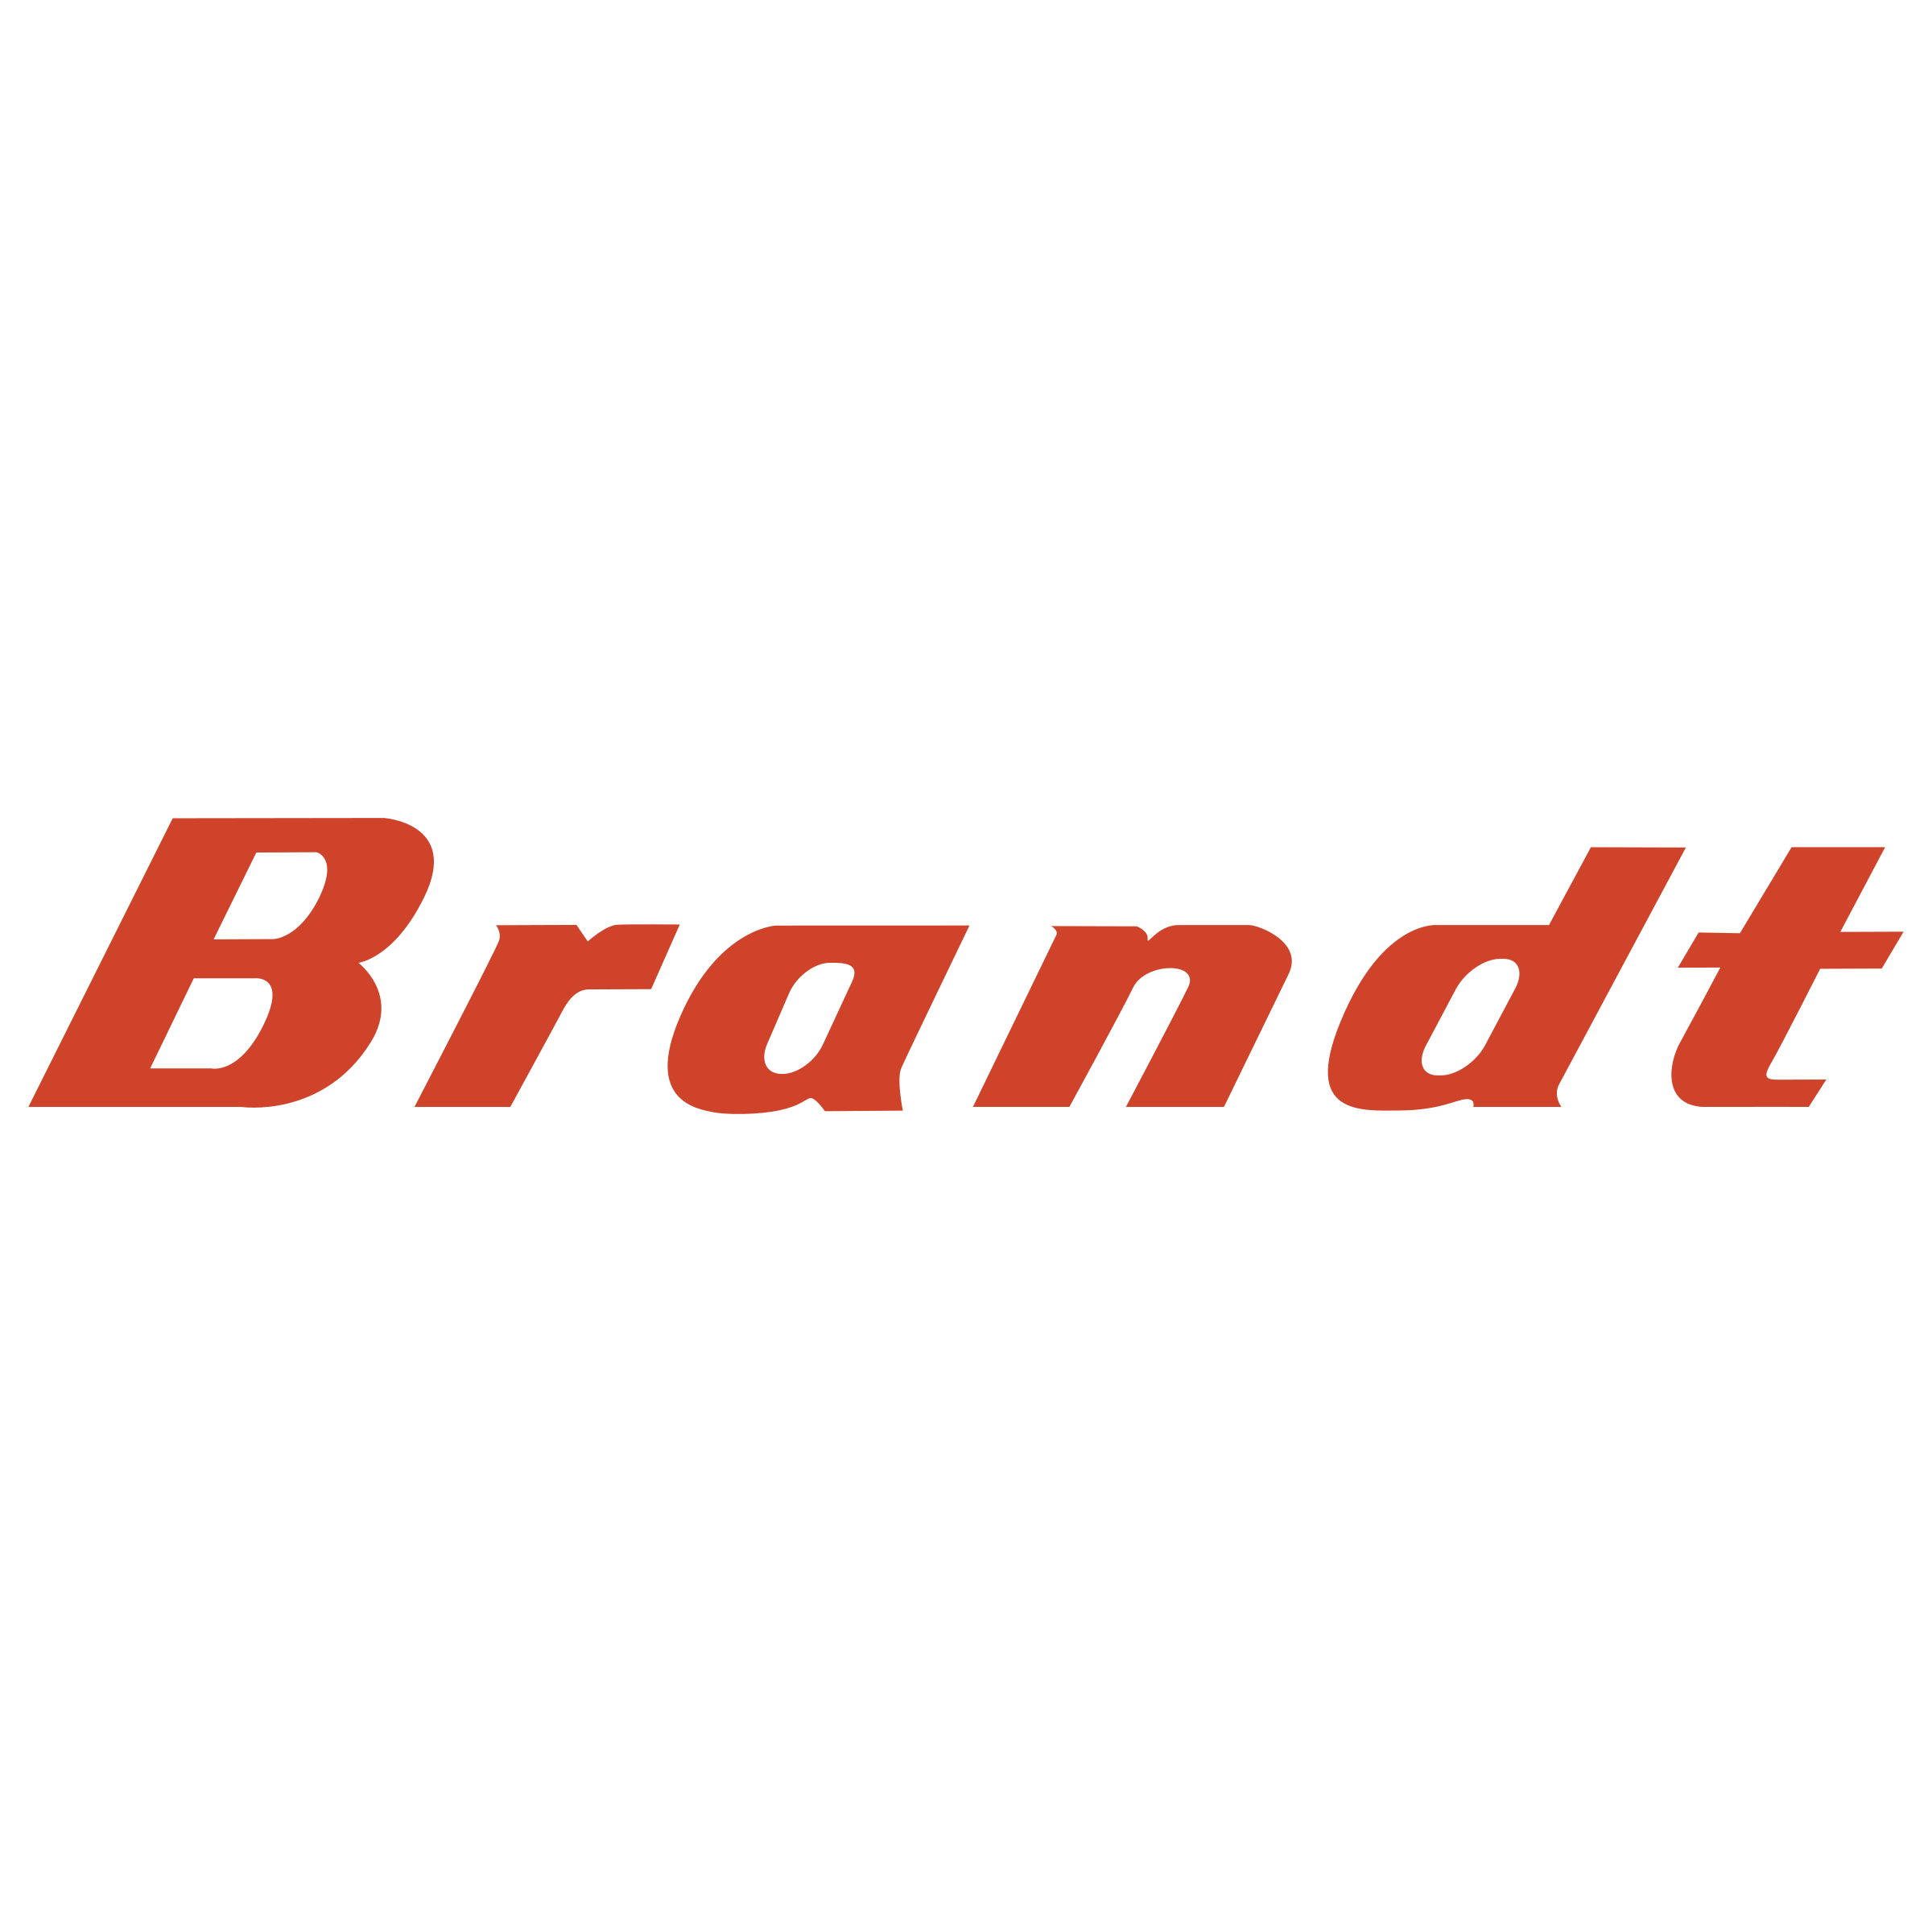 Brandt Logo - Brandt Logo PNG Transparent & SVG Vector